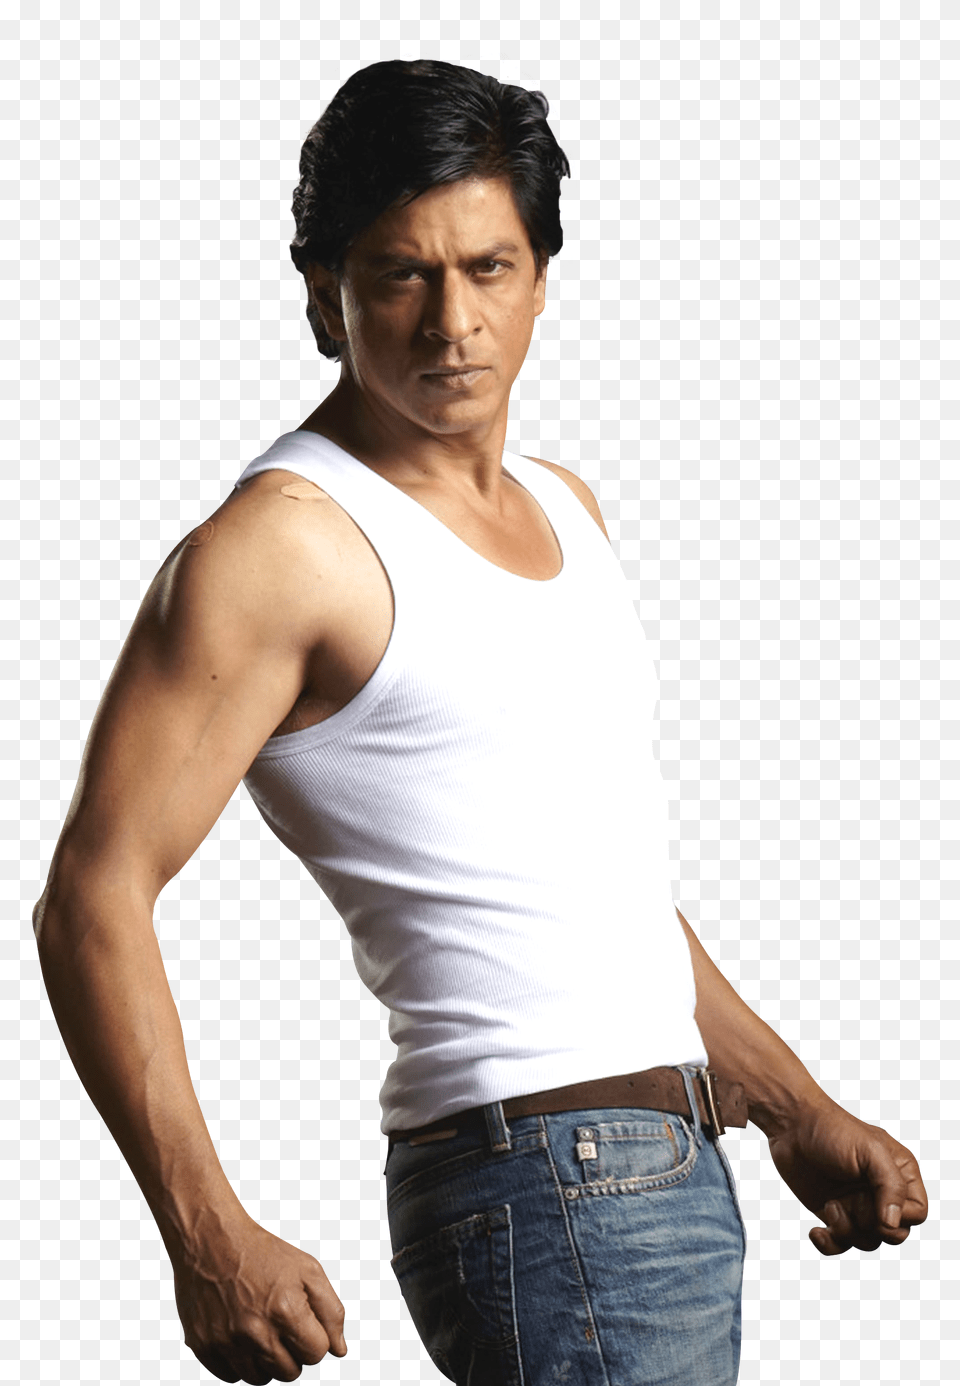 Pngpix Com Shah Rukh Khan Transparent, Undershirt, Clothing, Pants, Jeans Png Image